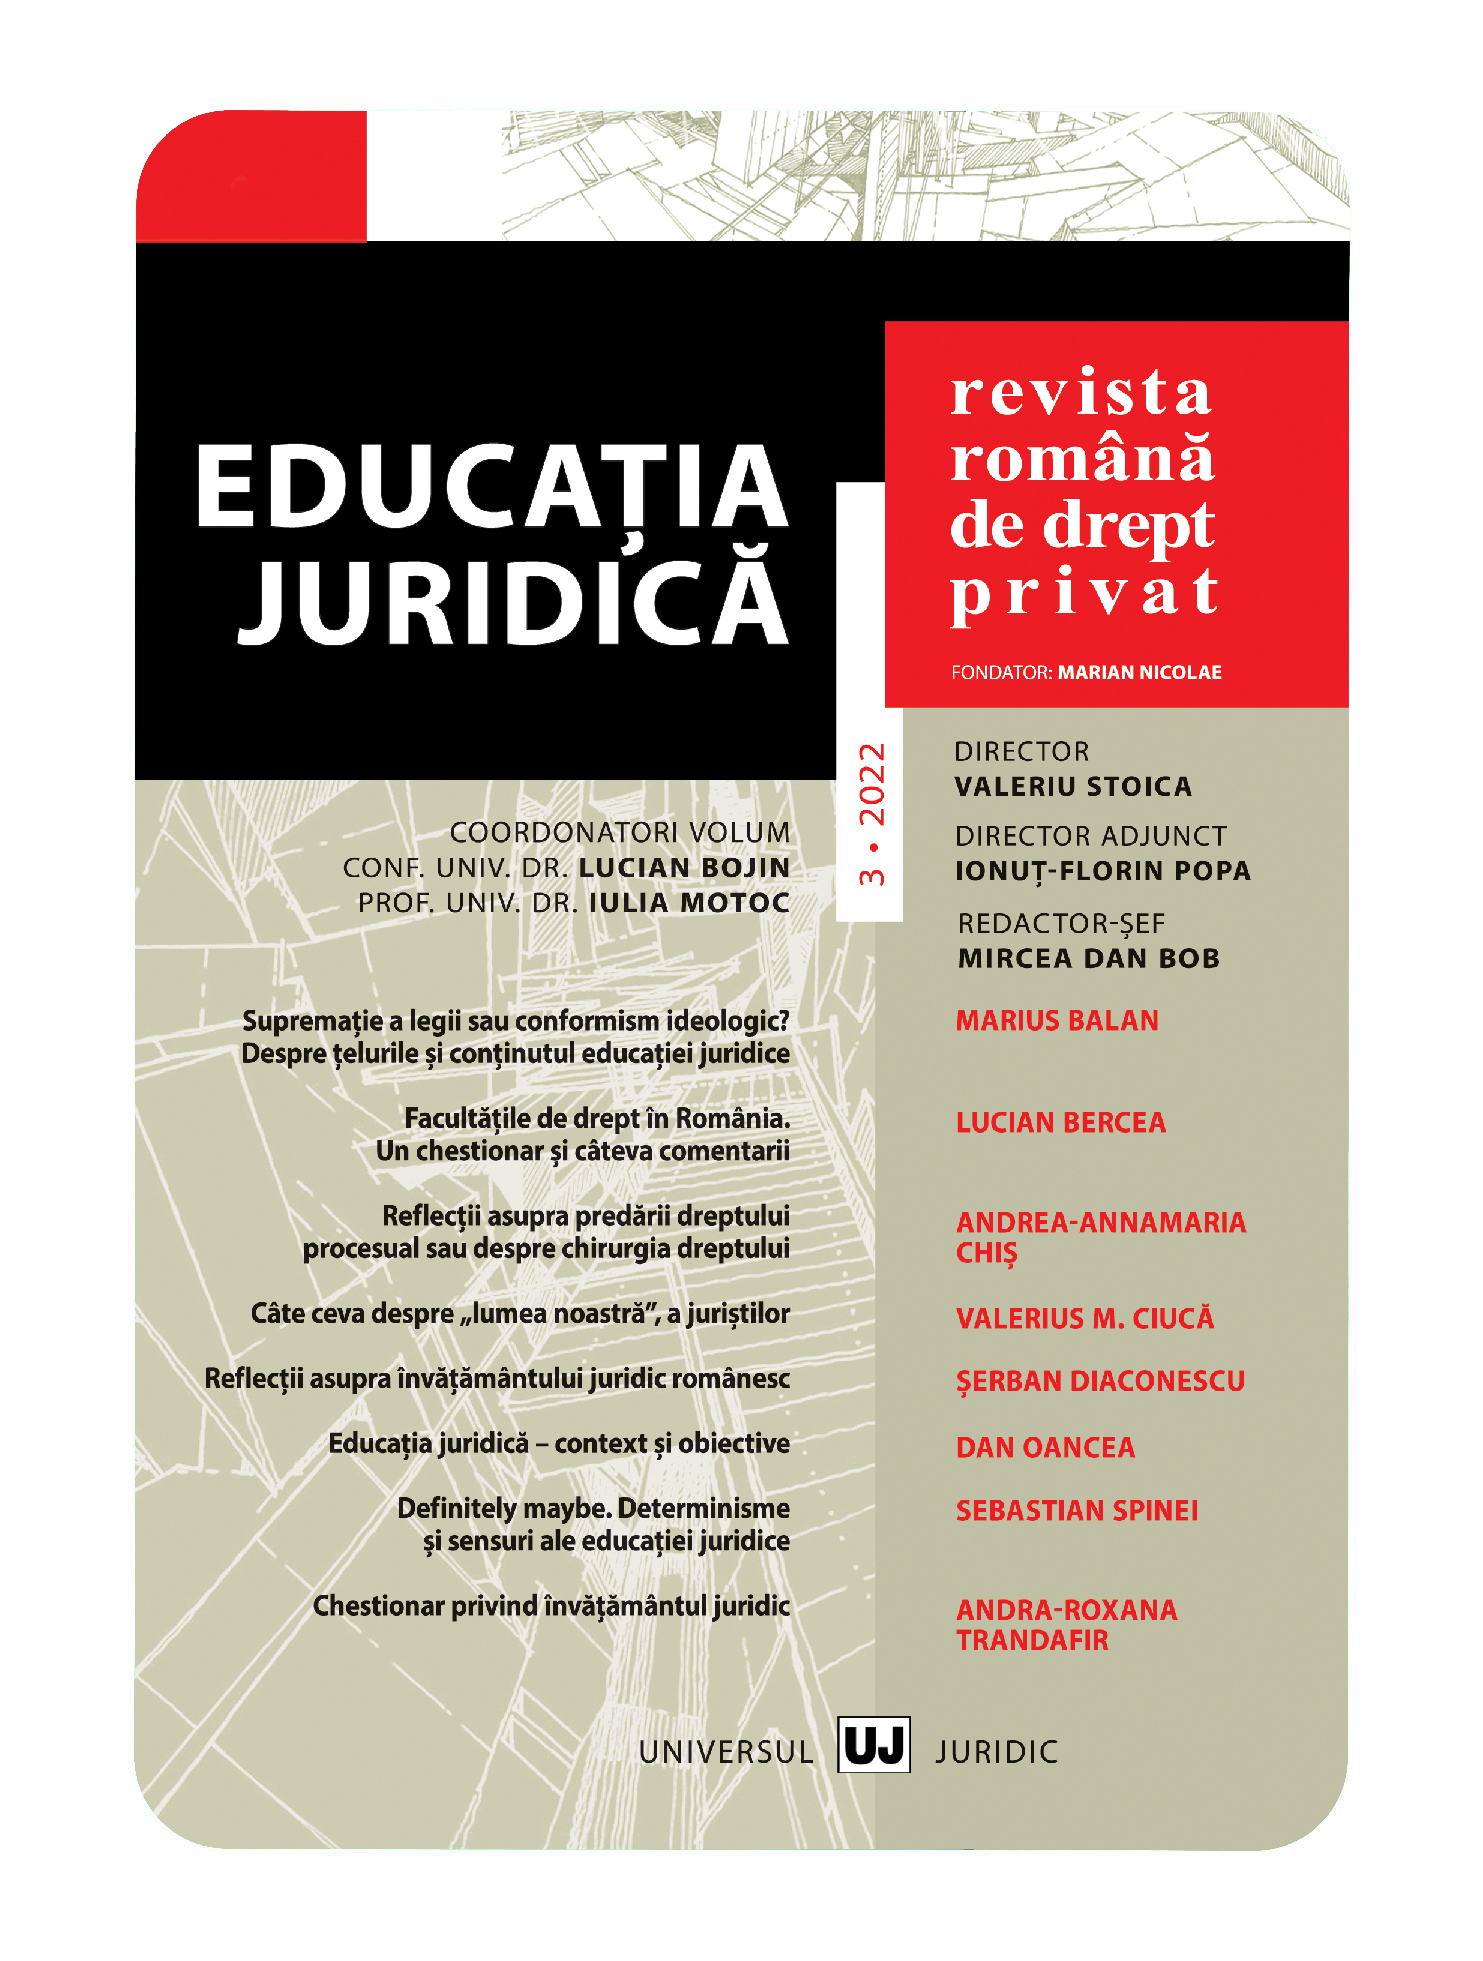 Câteva reflecţii despre educaţia juridică şi învăţământul juridic din România: status quo şi perspective